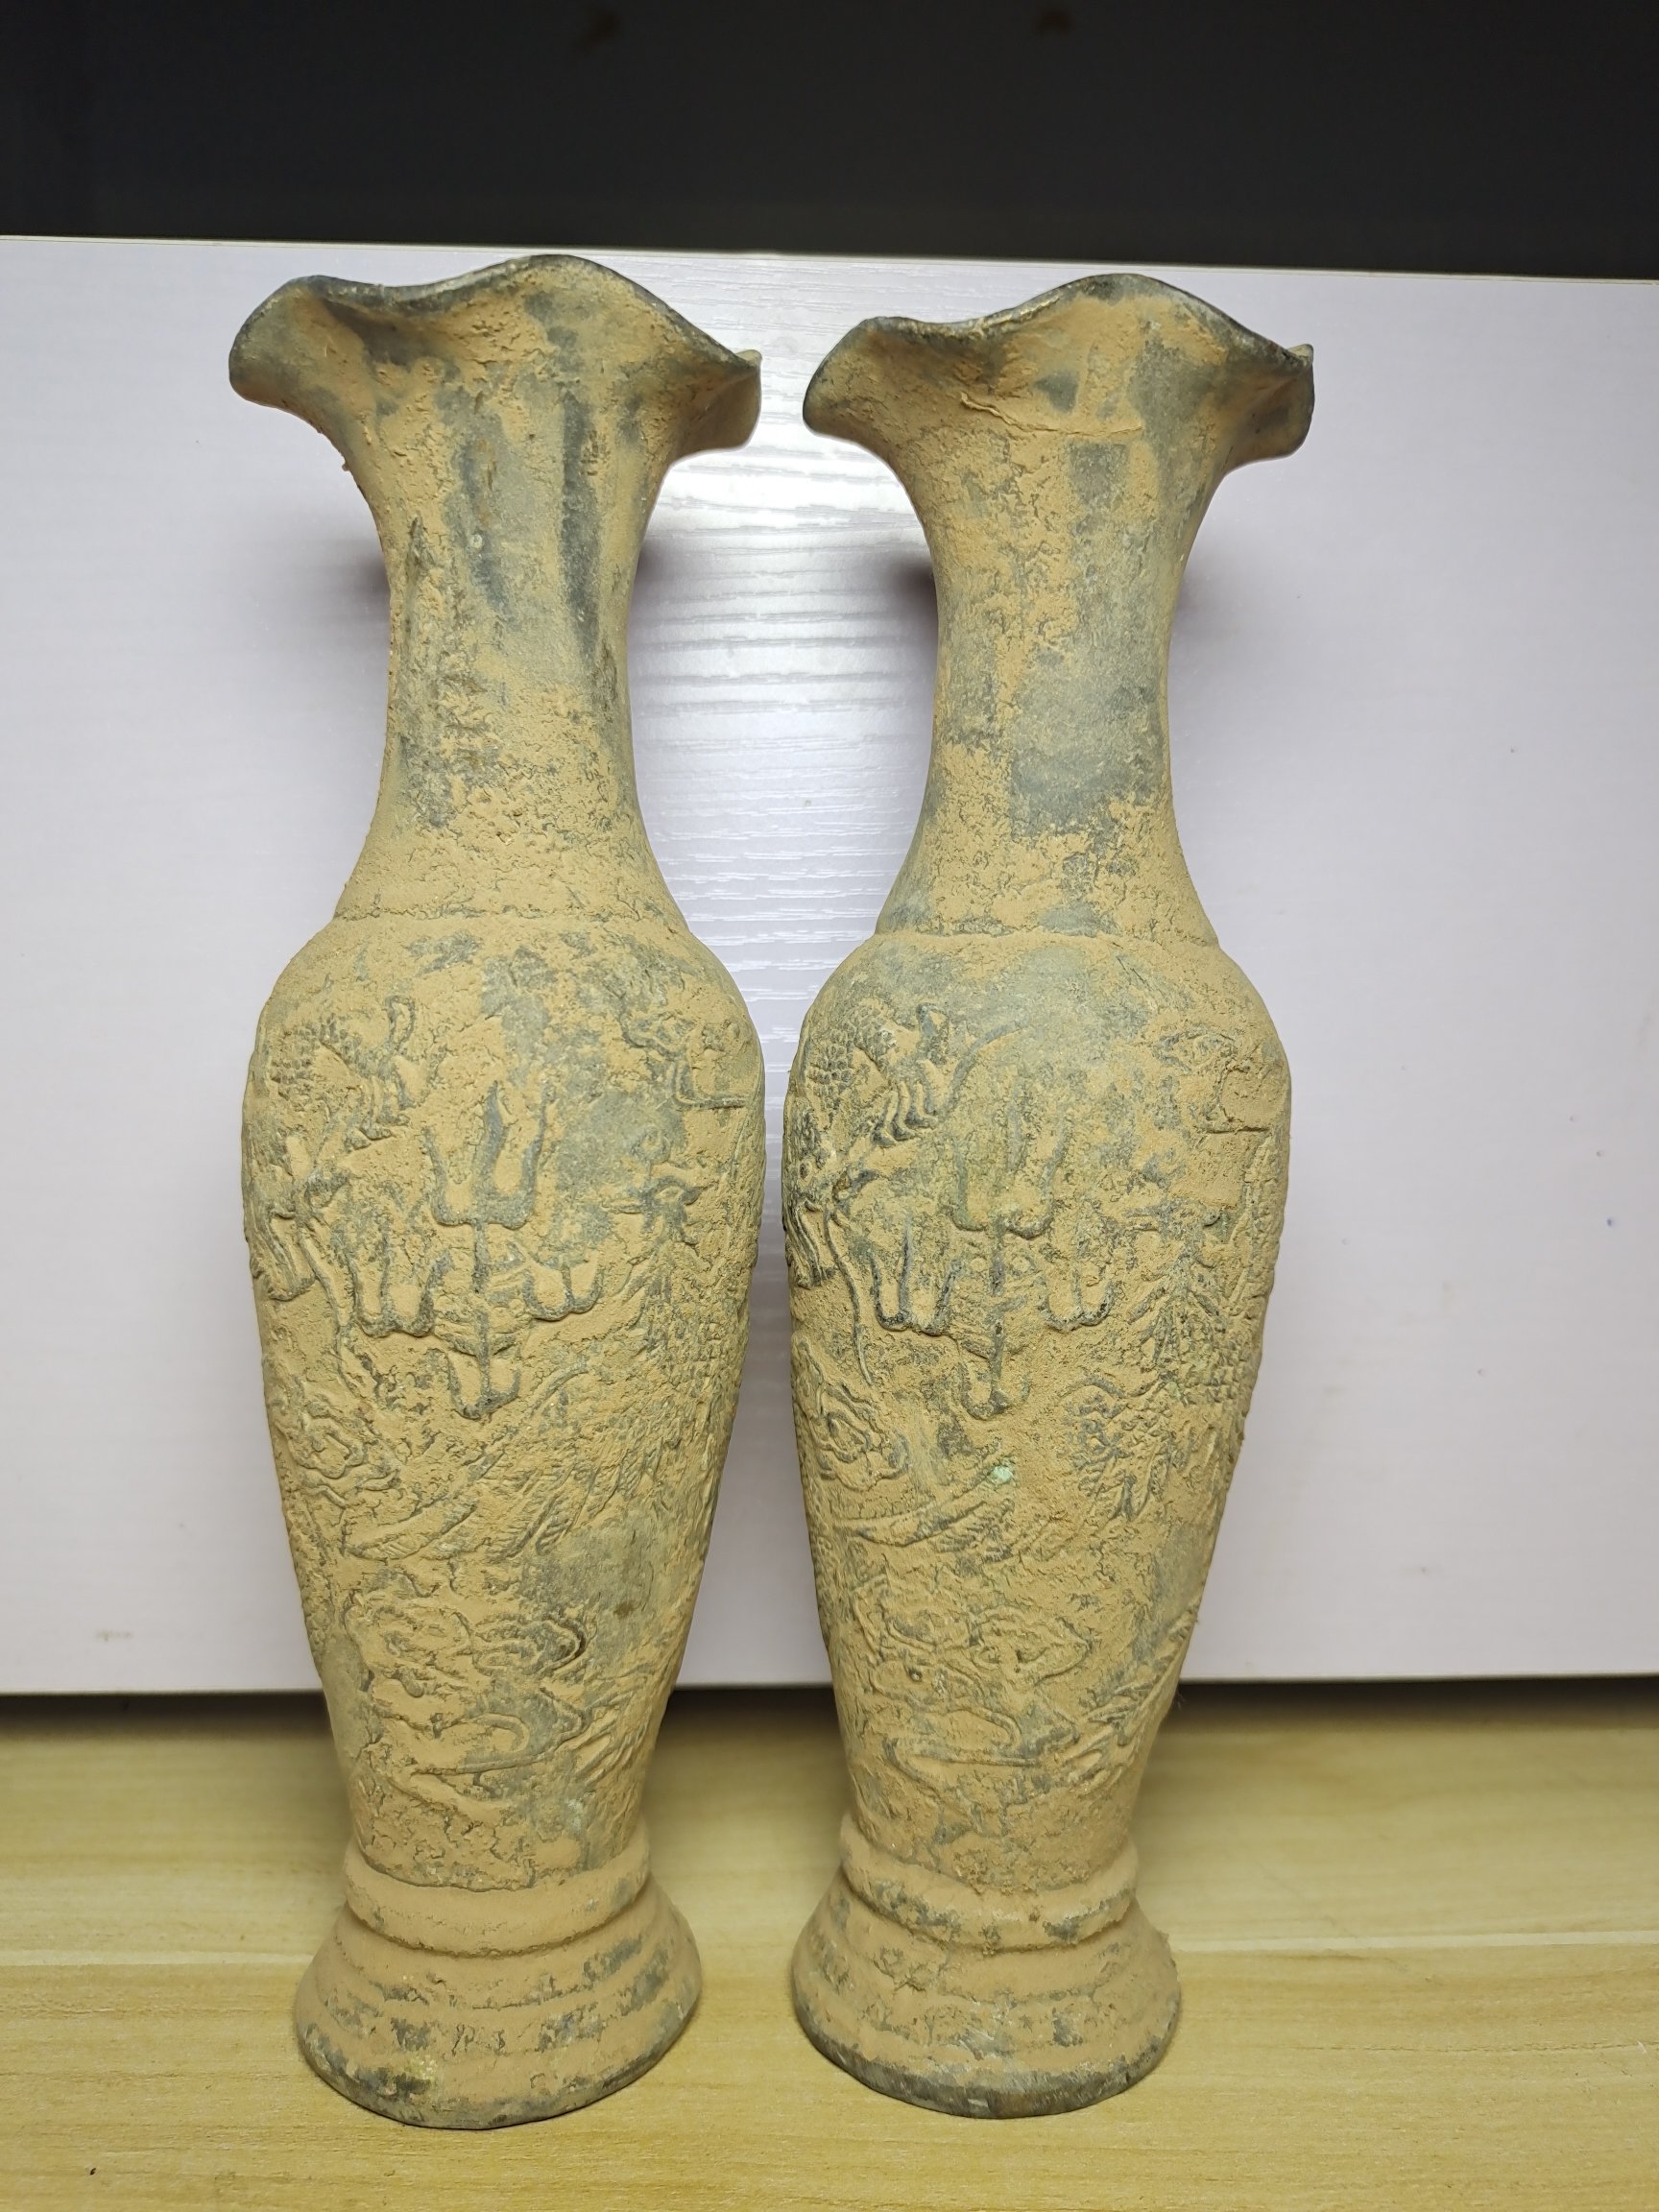 古玩古董收藏品出土清代龙凤花瓶铜花瓶一对青铜器摆件老物件